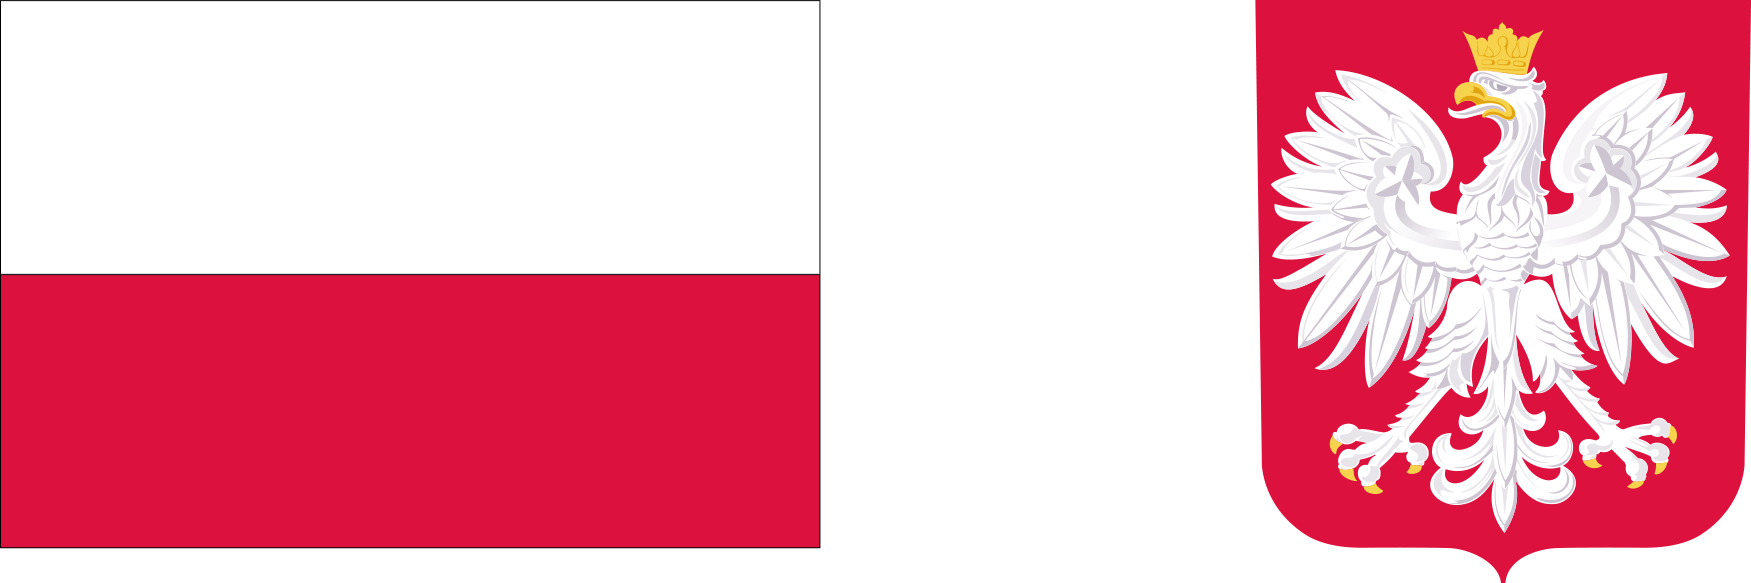 Logotypy: od lewej Flaga Państwowa Rzeczypospolitej Polskiej, Godło Rzeczypospolitej Polskiej